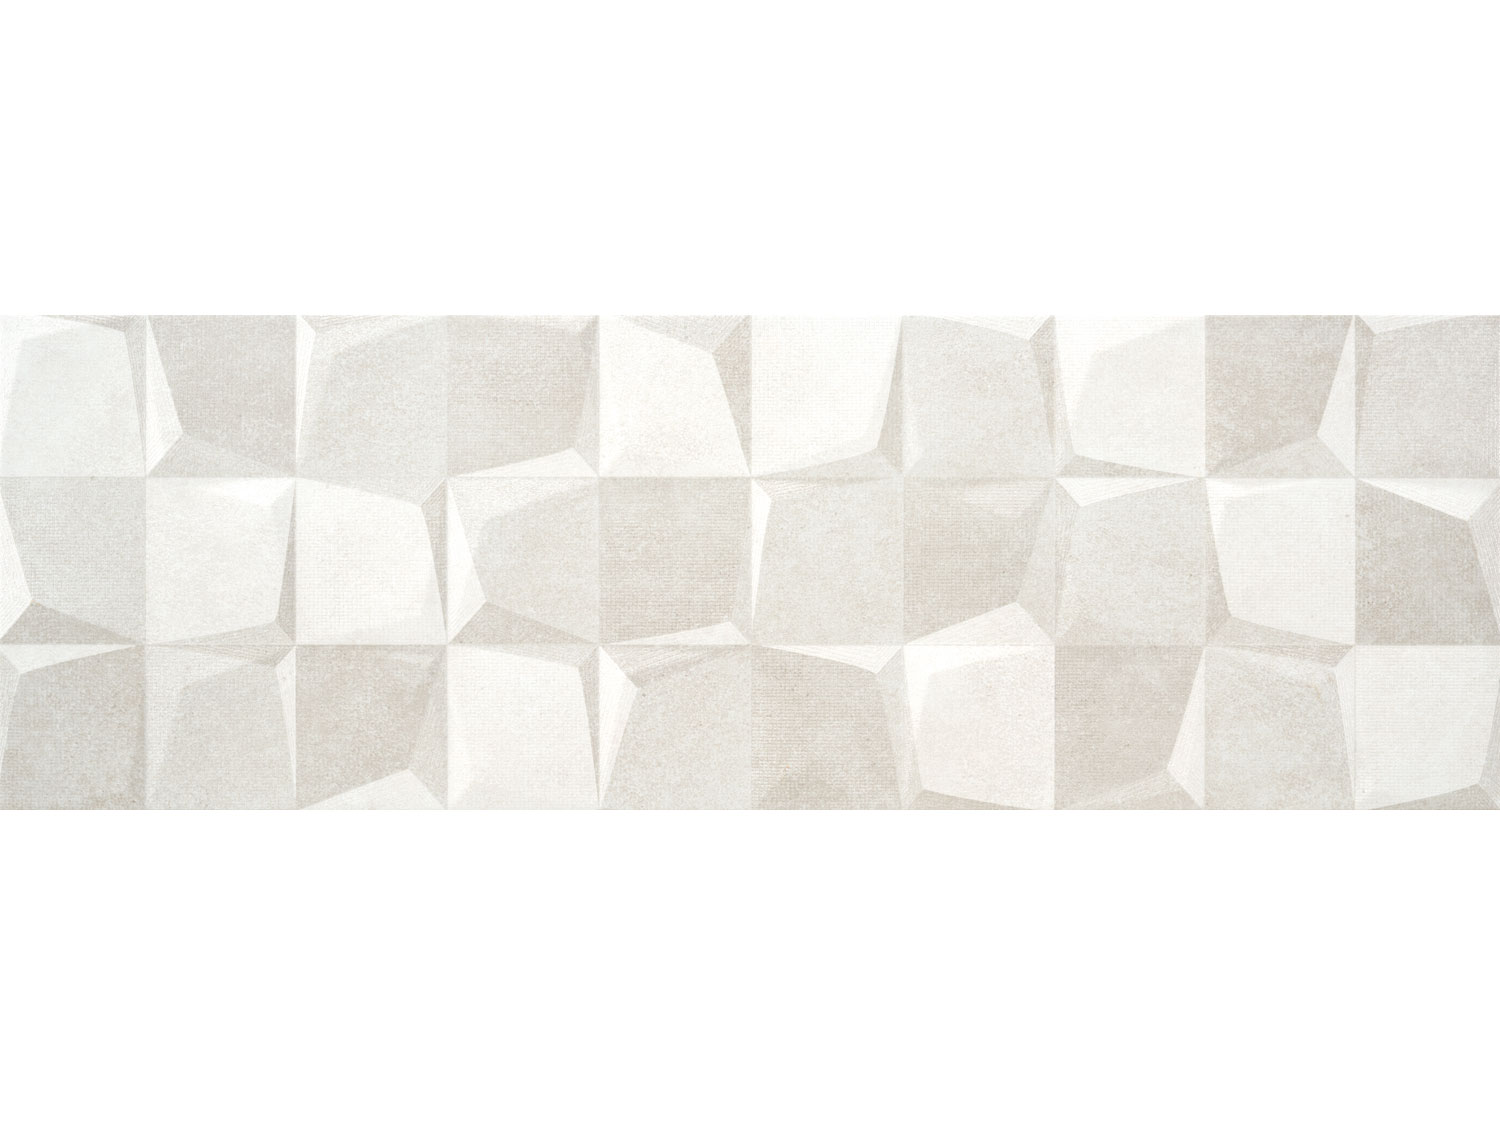 Accord Pi Cold Mt Ceramic Wall Decor Tile